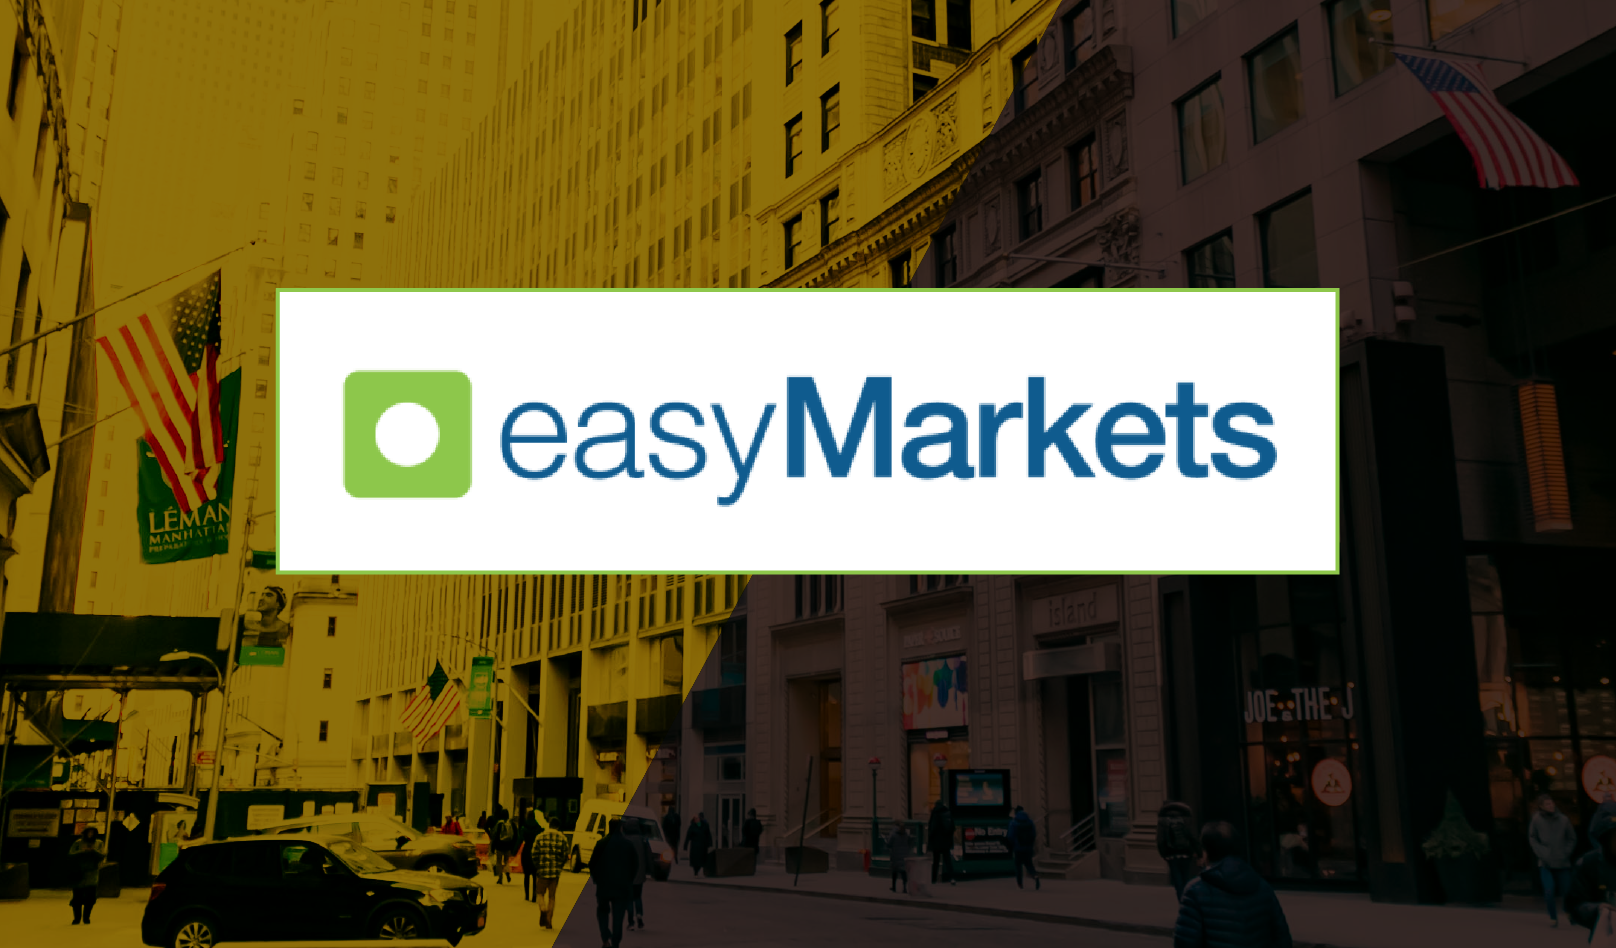 「easyMarkets(イージーマーケット)の評判・口コミについてSNSやブログをチェック」のアイキャッチ画像